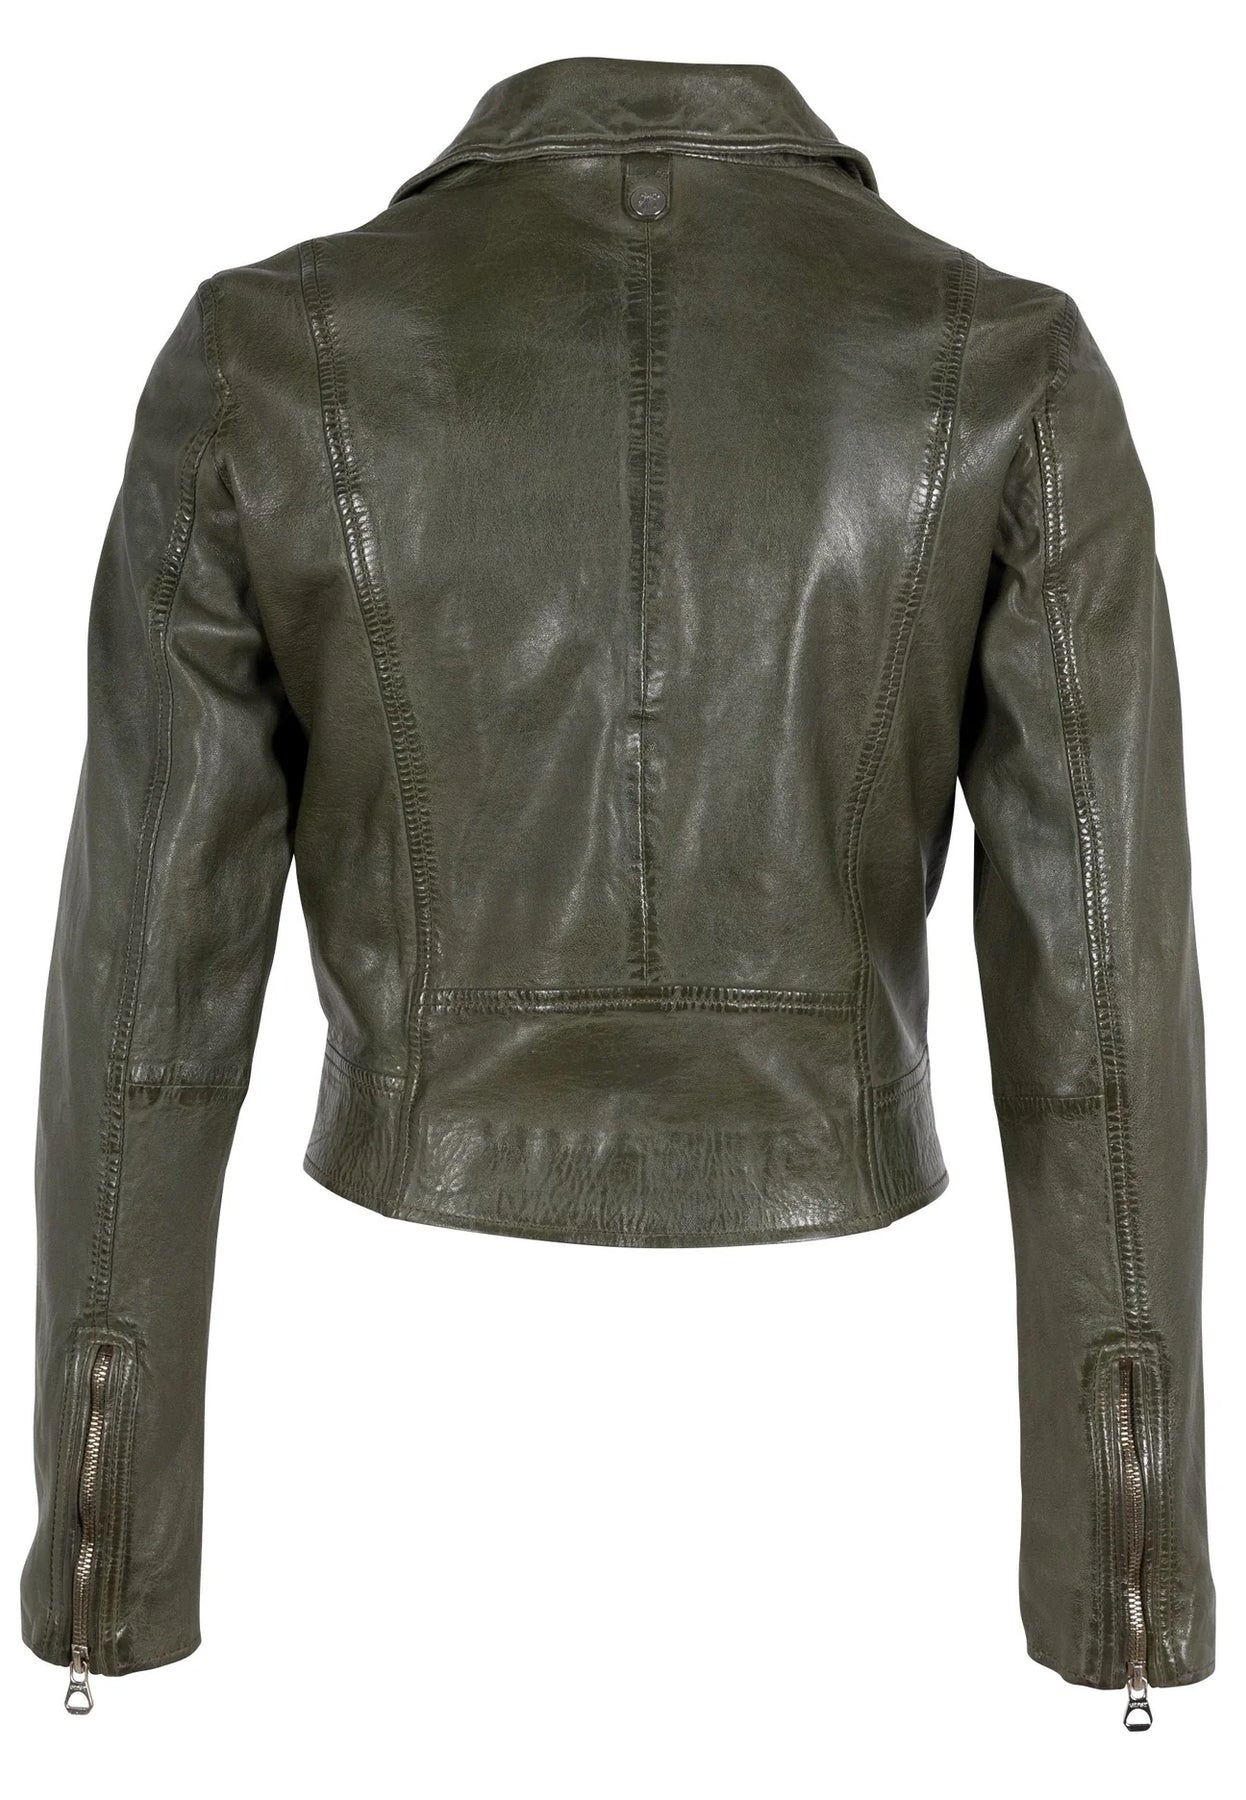 Maritius Julene Leather Jacket